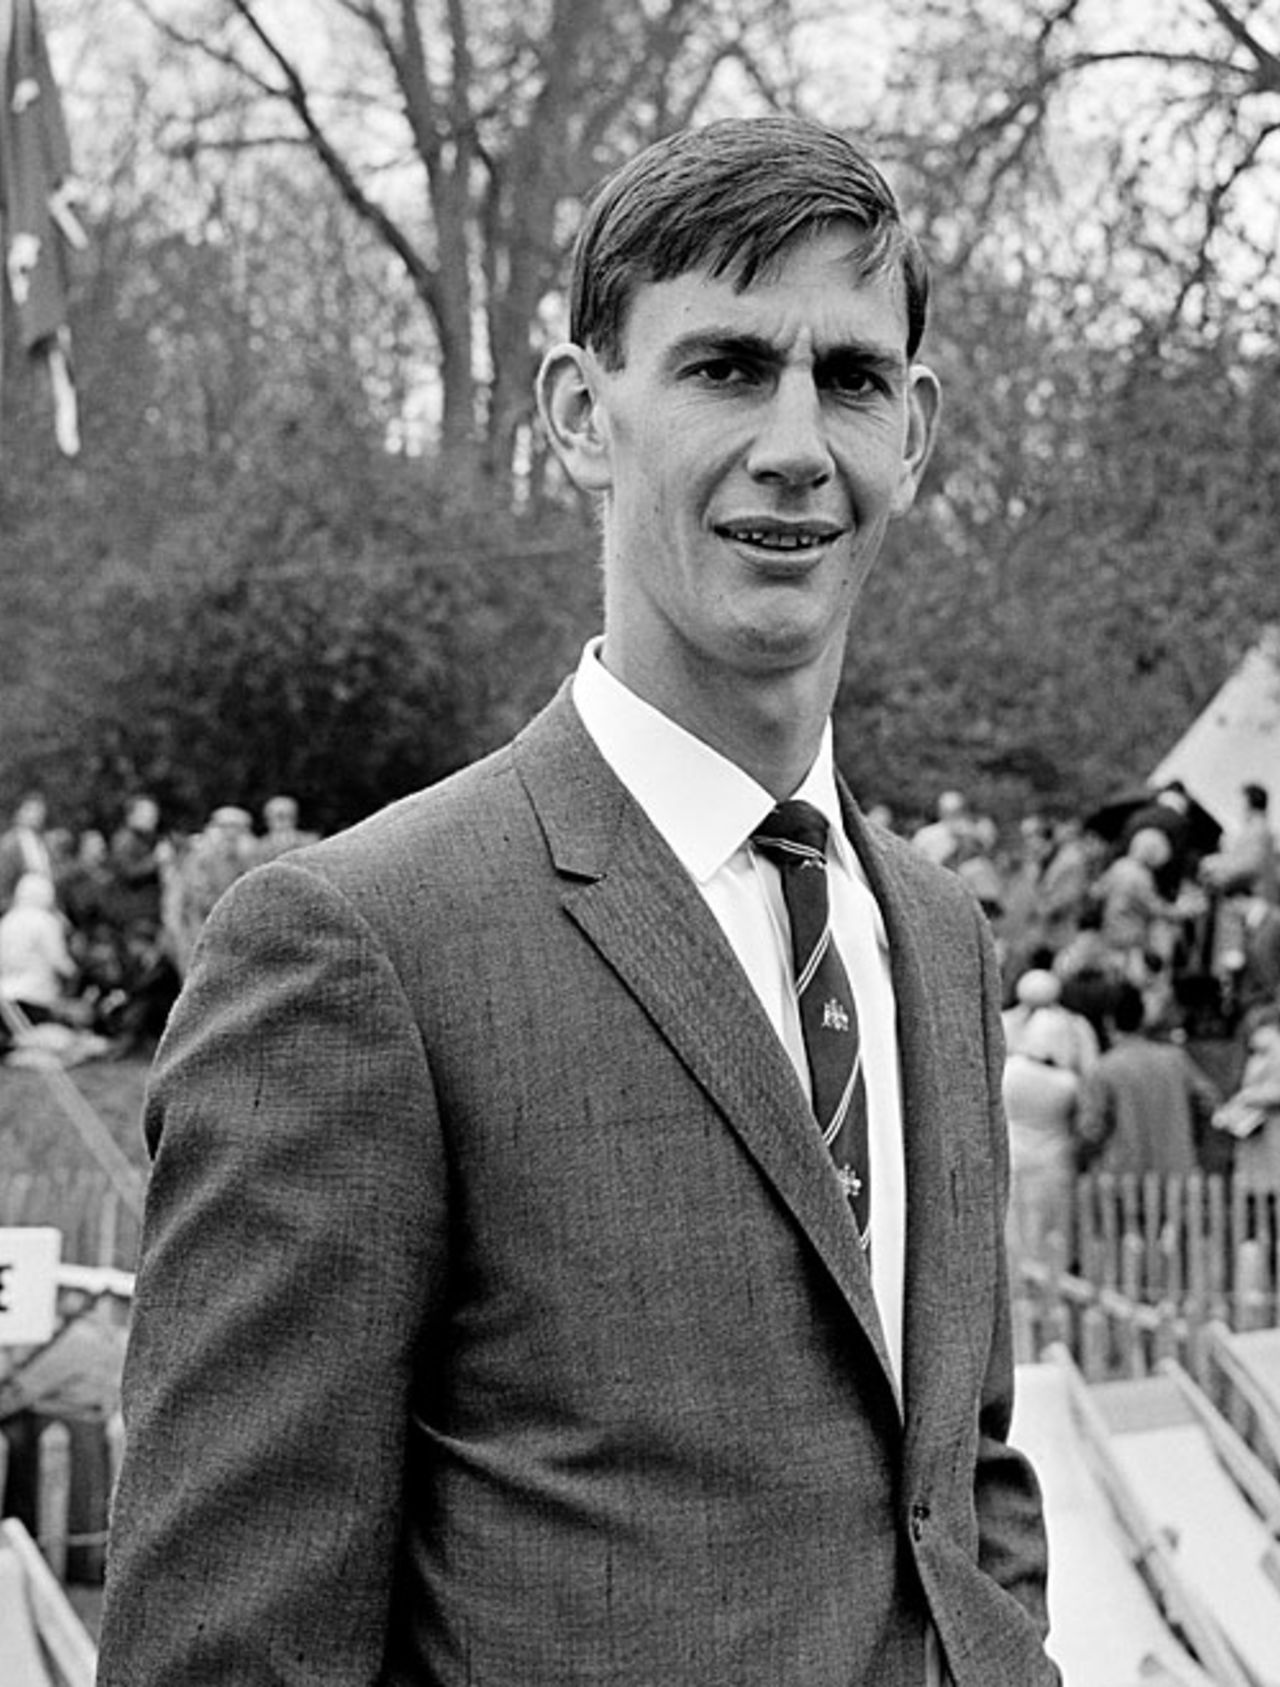 Ian Redpath at Arundel, April 25, 1964